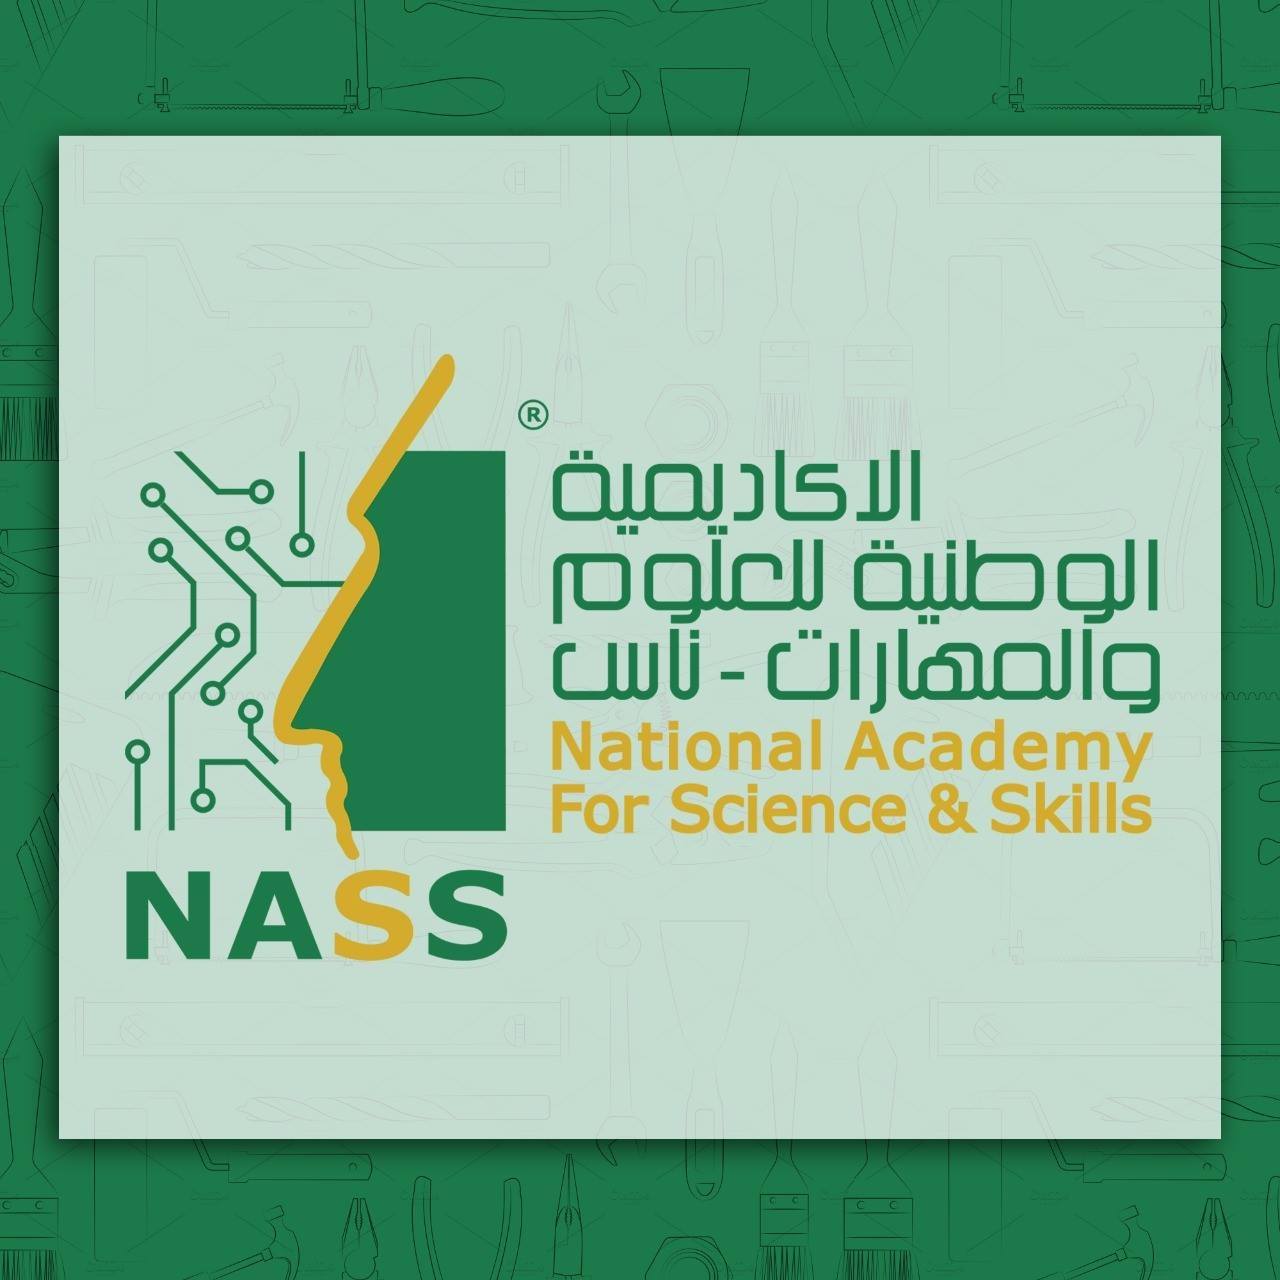 Nass Academy